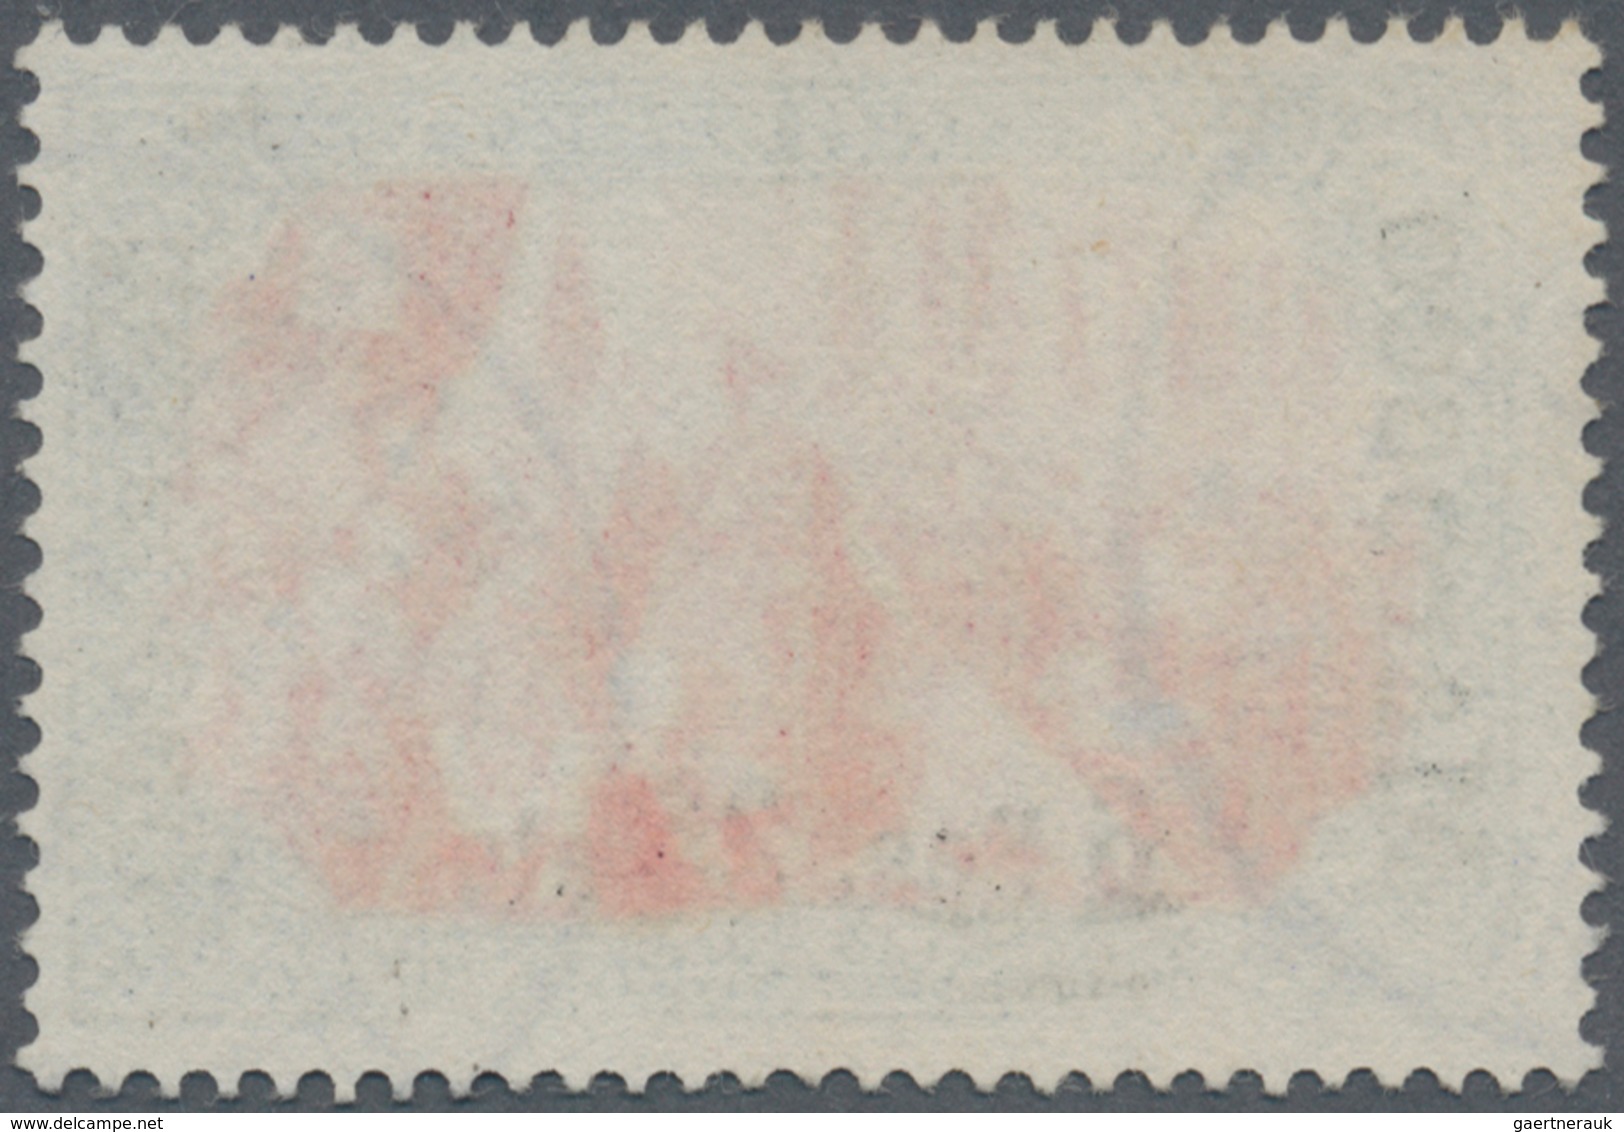 Deutsche Post In Marokko: 1900, "6 P 25 C" Auf 5 Mark Germania "REICHSPOST", Type I (ohne Nachmalung - Deutsche Post In Marokko